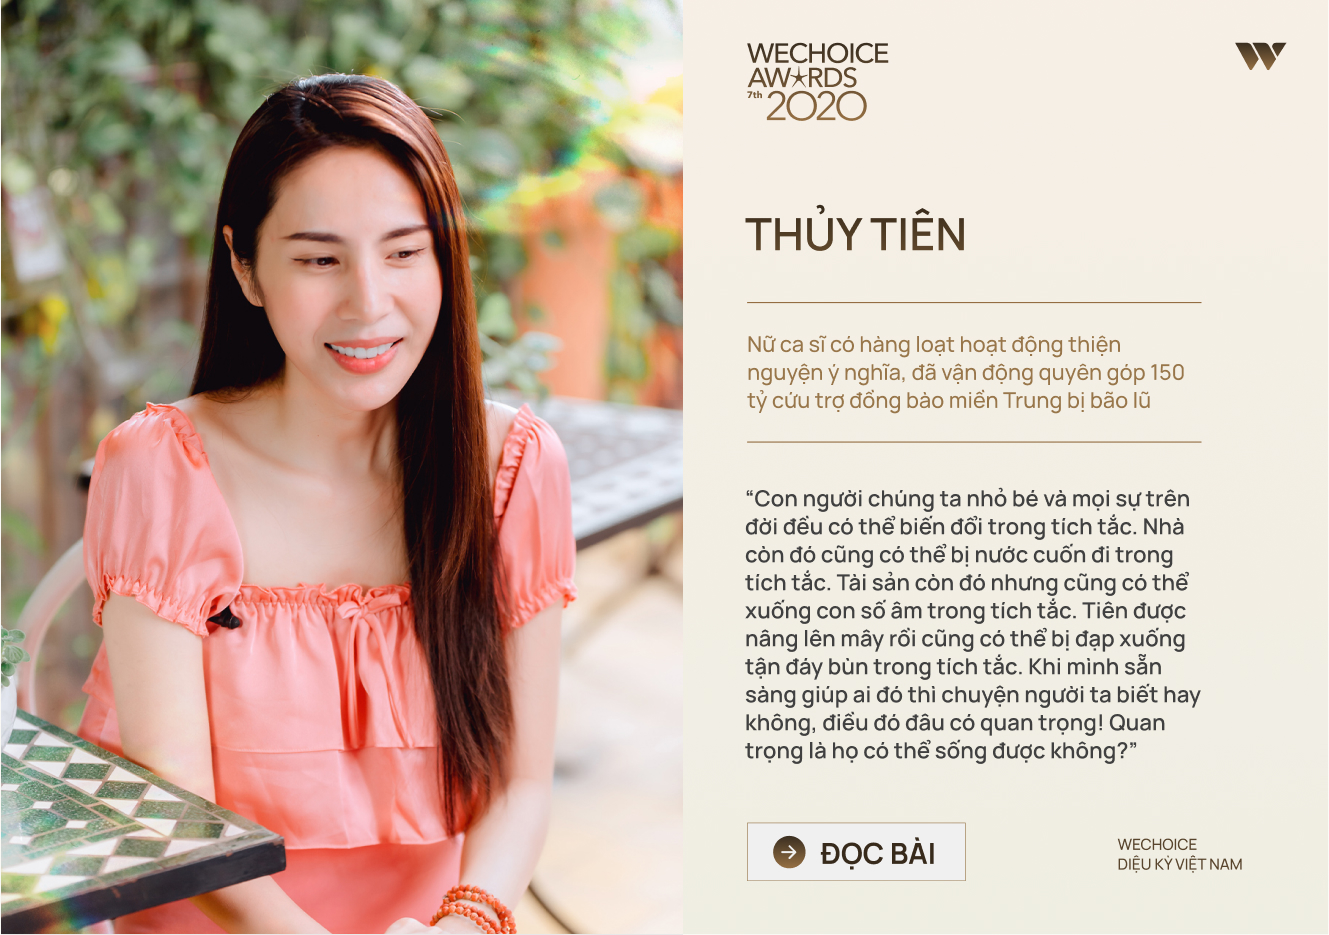 20 đề cử nhân vật truyền cảm hứng của WeChoice Awards 2020: Những câu chuyện tạo nên Diệu kỳ Việt Nam - Ảnh 12.